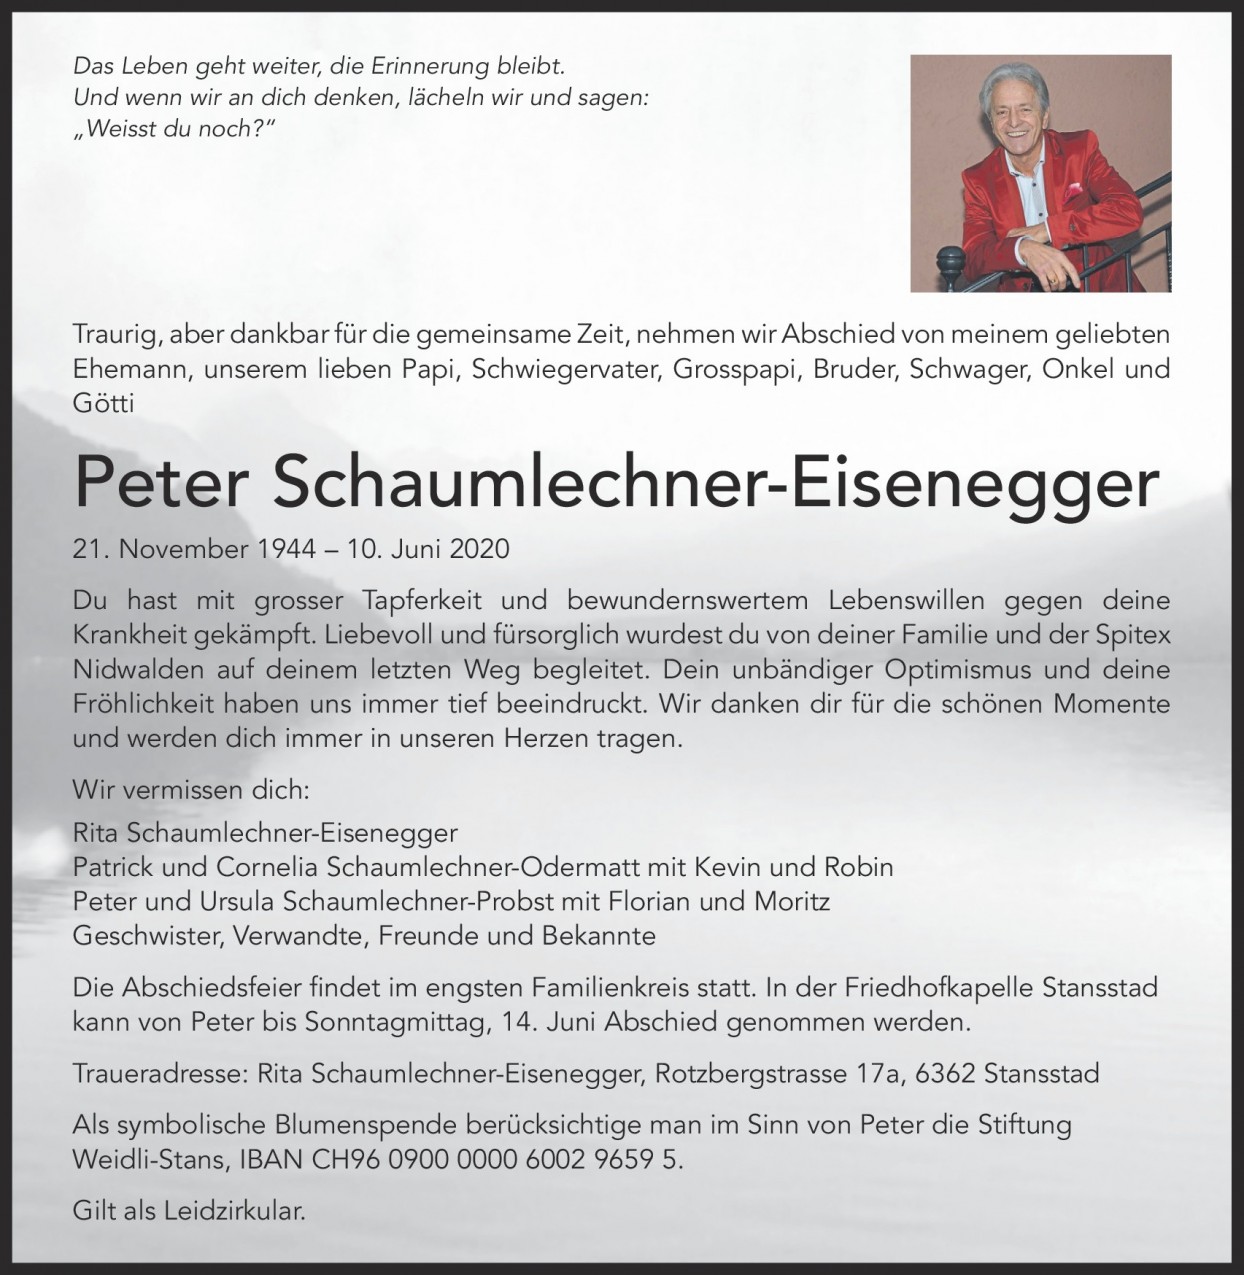 Peter Schaumlechner-Eisenegger